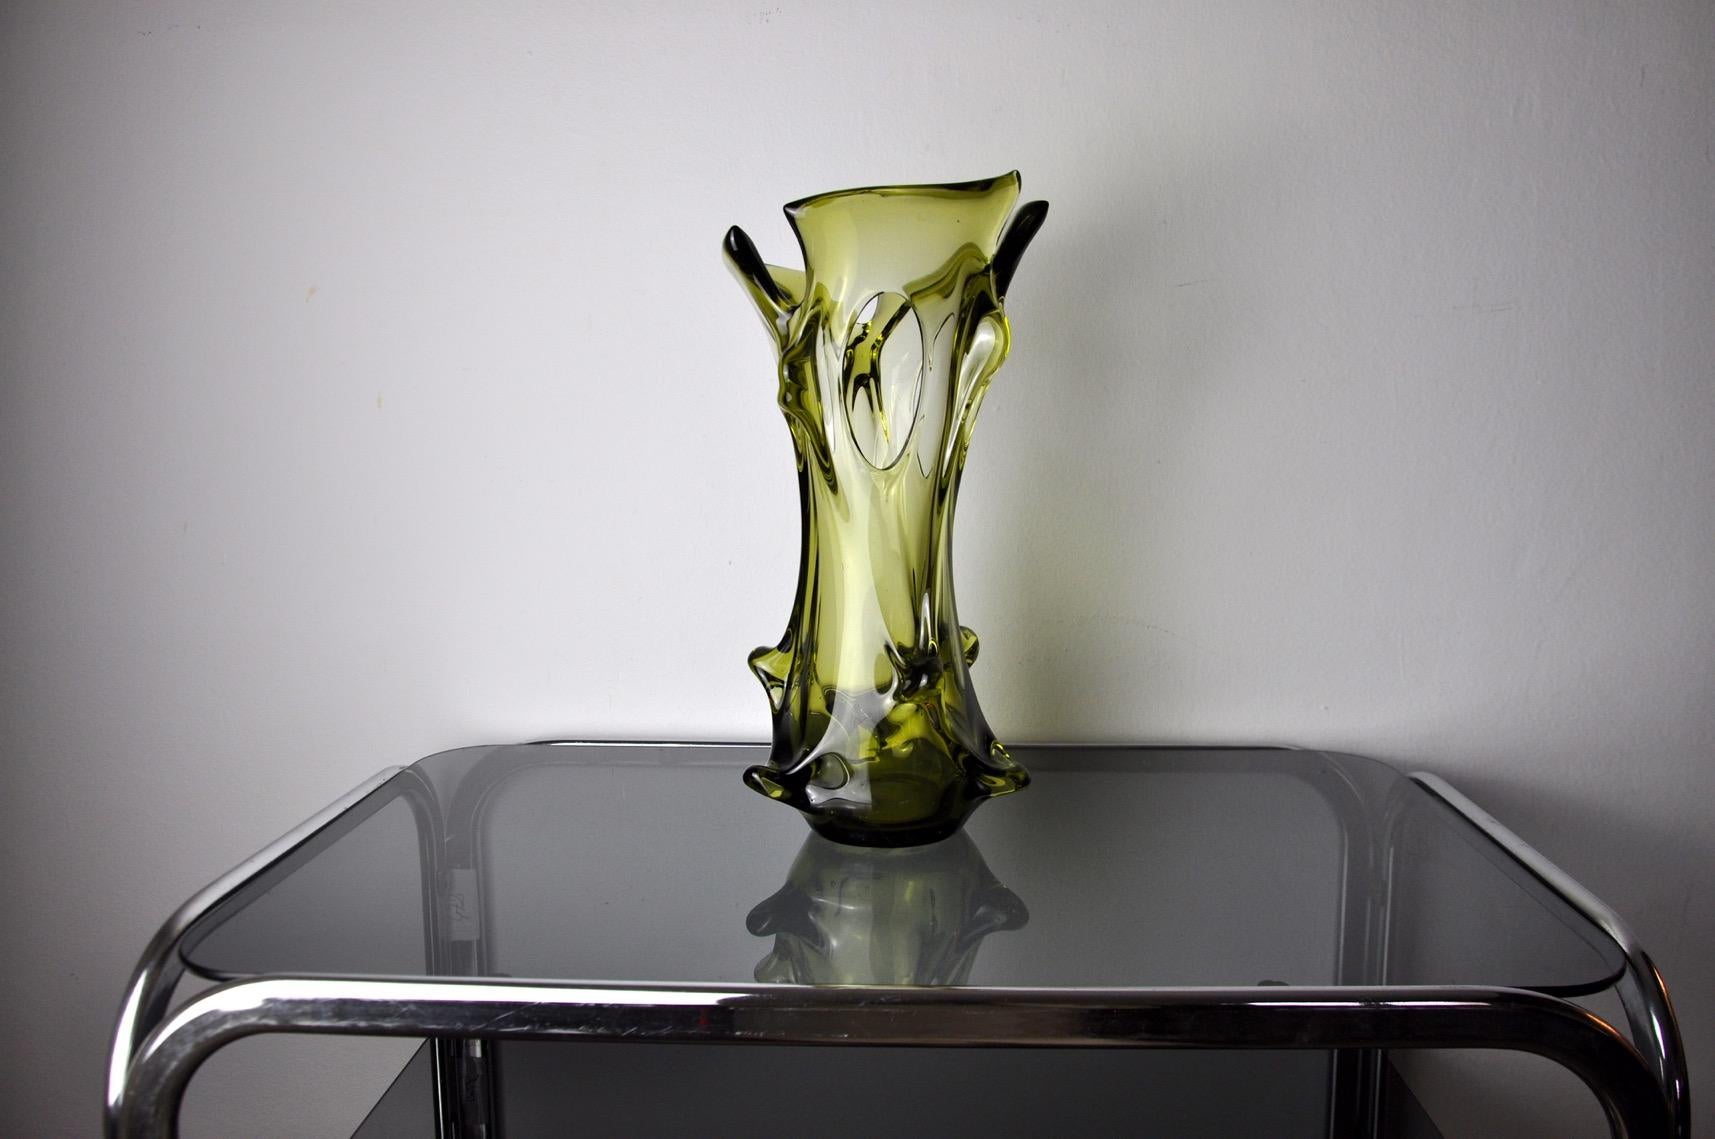 Hervorragende und seltene mundgeblasene sommerso grüne italienische Kunstglasvase. Zuschreibung an Seguso, Murano Italien, 1960er Jahre. Diese große, farbenfrohe Vase hat ein schönes Design mit gezeichneten Details und einem gerippten Rand in der